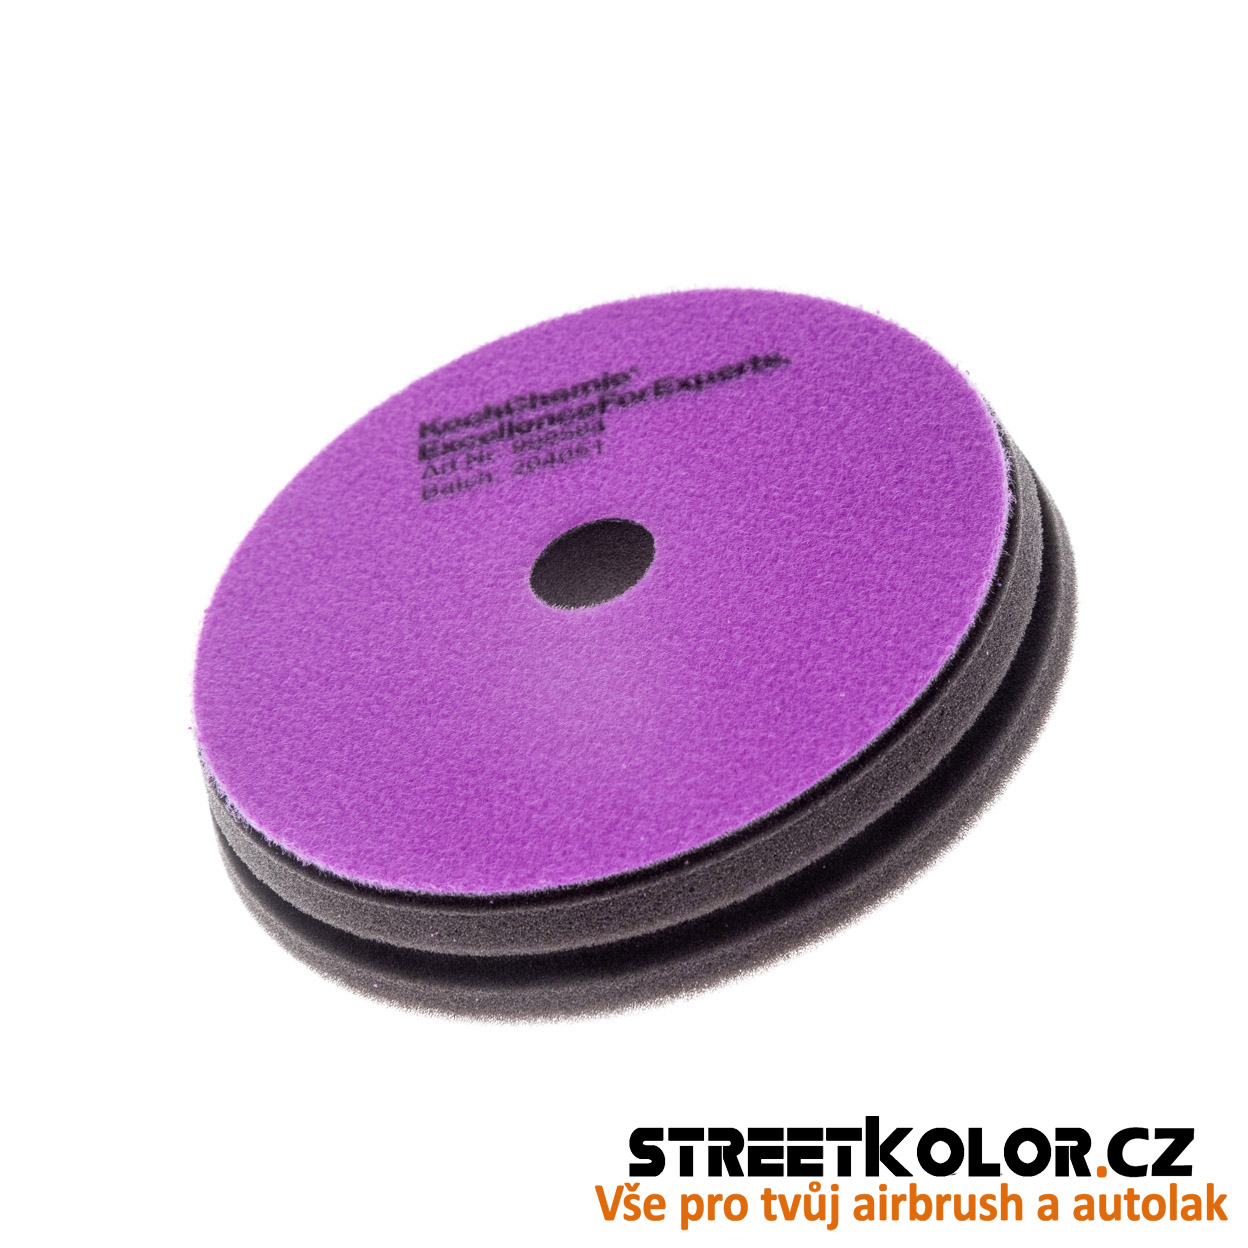 KochChemie Finální antihologramový fialový leštící kotouč Micro Cut Pad 150x23mm